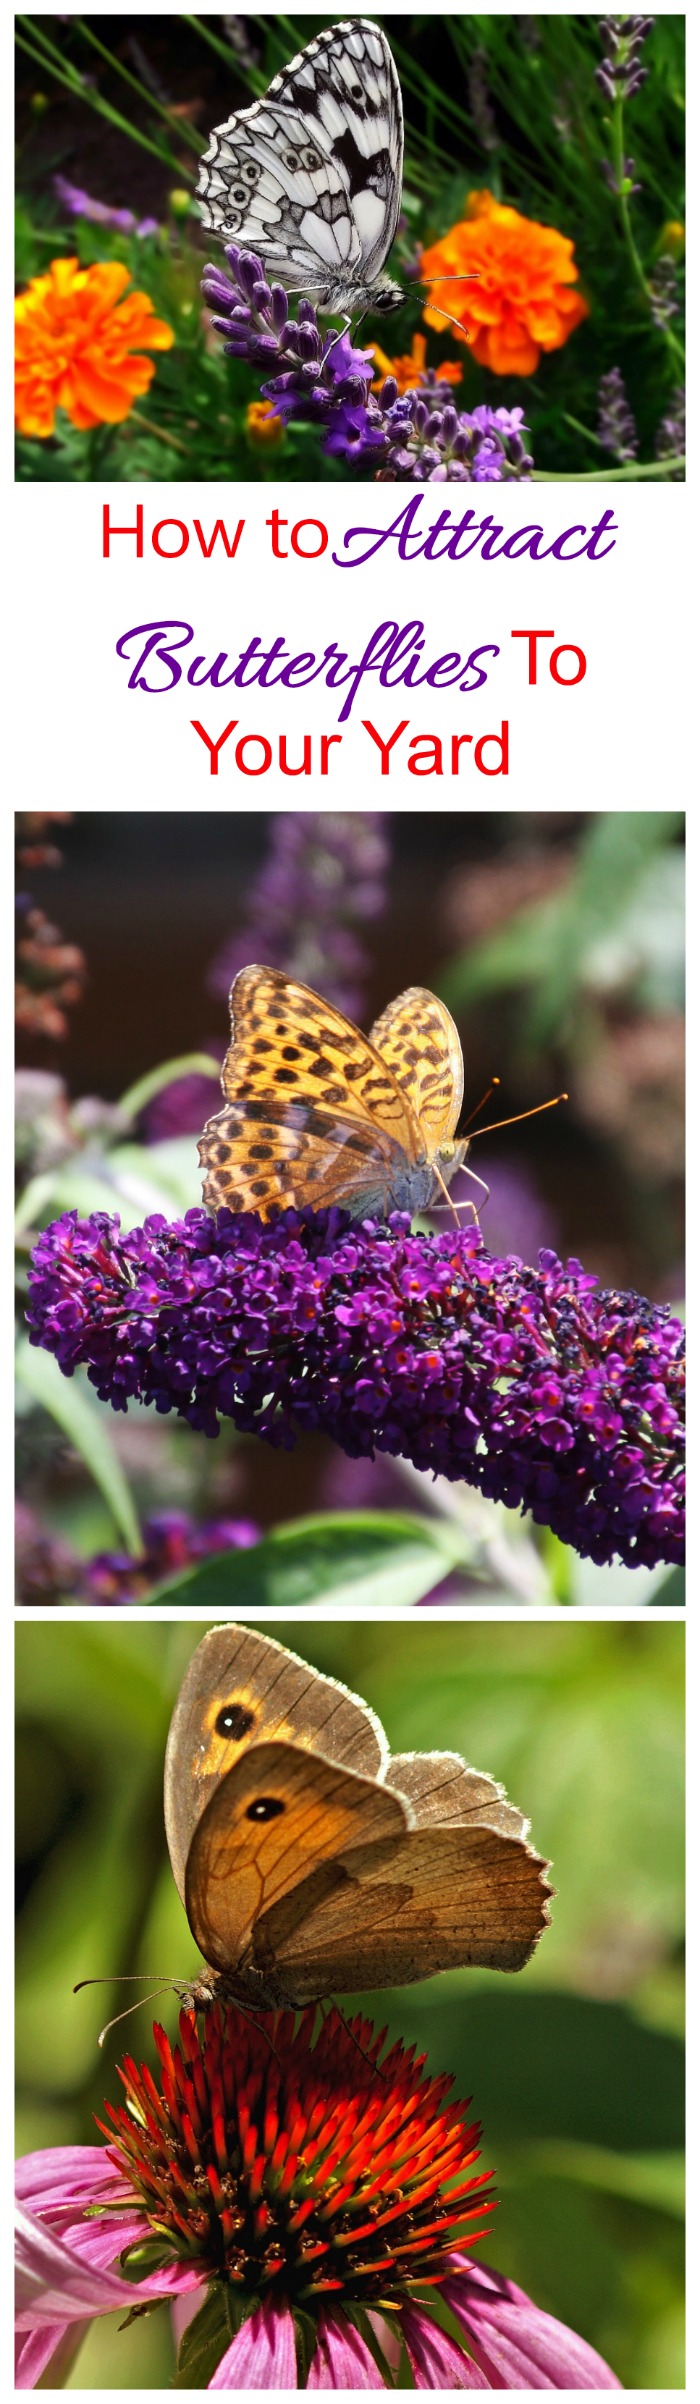 Przyciąganie motyli - wskazówki, jak przyciągnąć motyle na swoje podwórko jak magnes